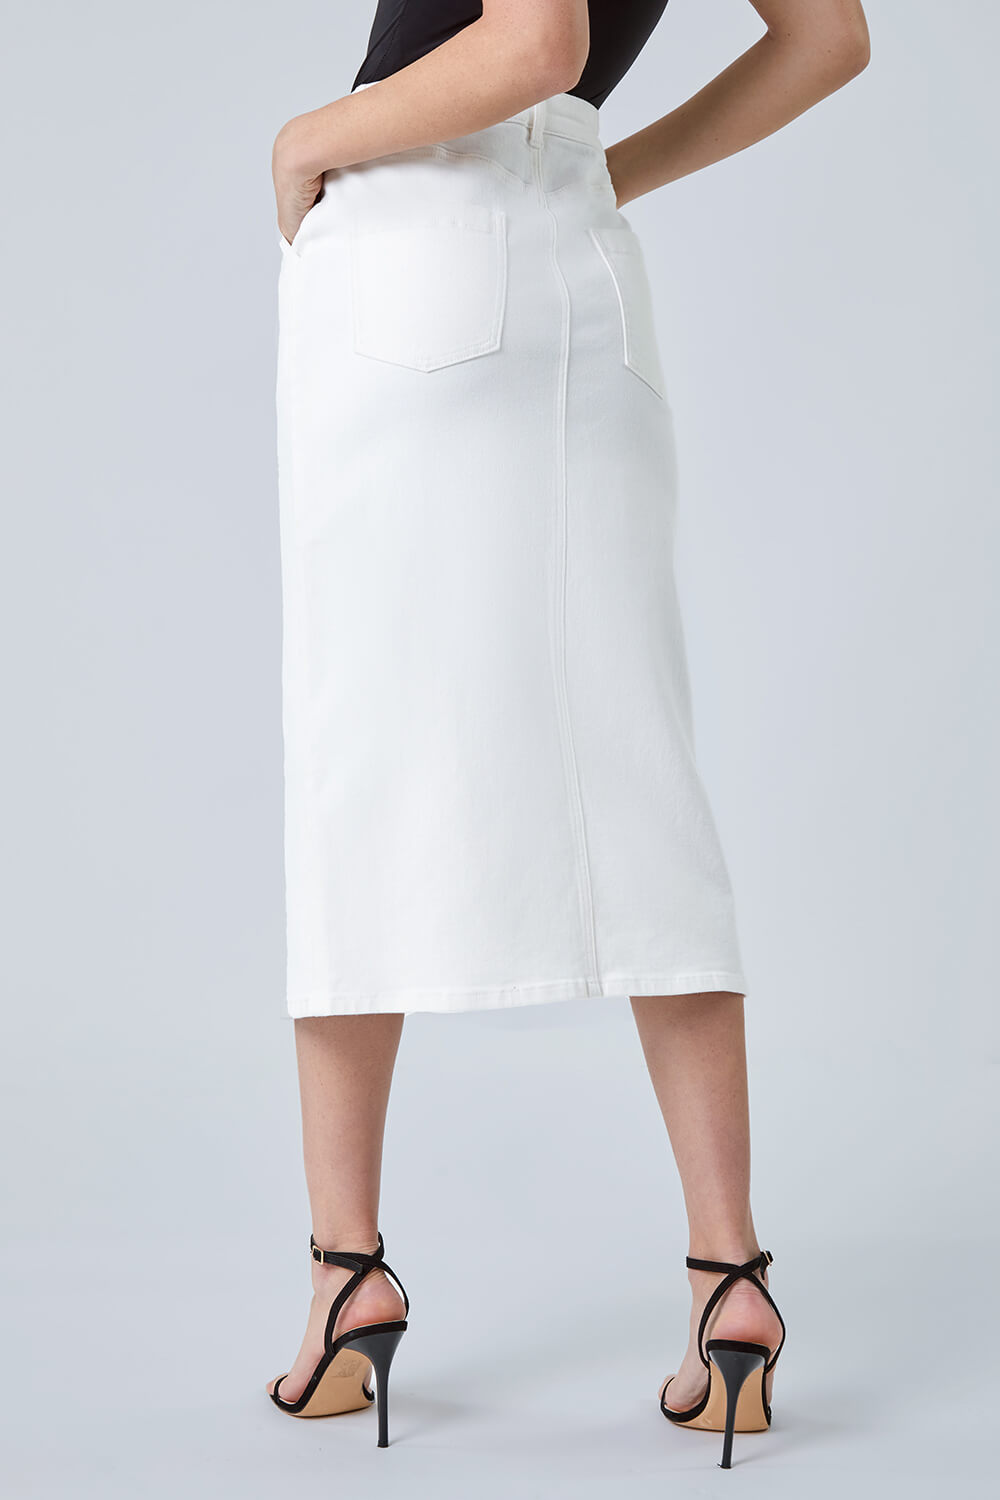 White Cotton Blend Denim Stretch Midi Skirt, Image 3 of 5